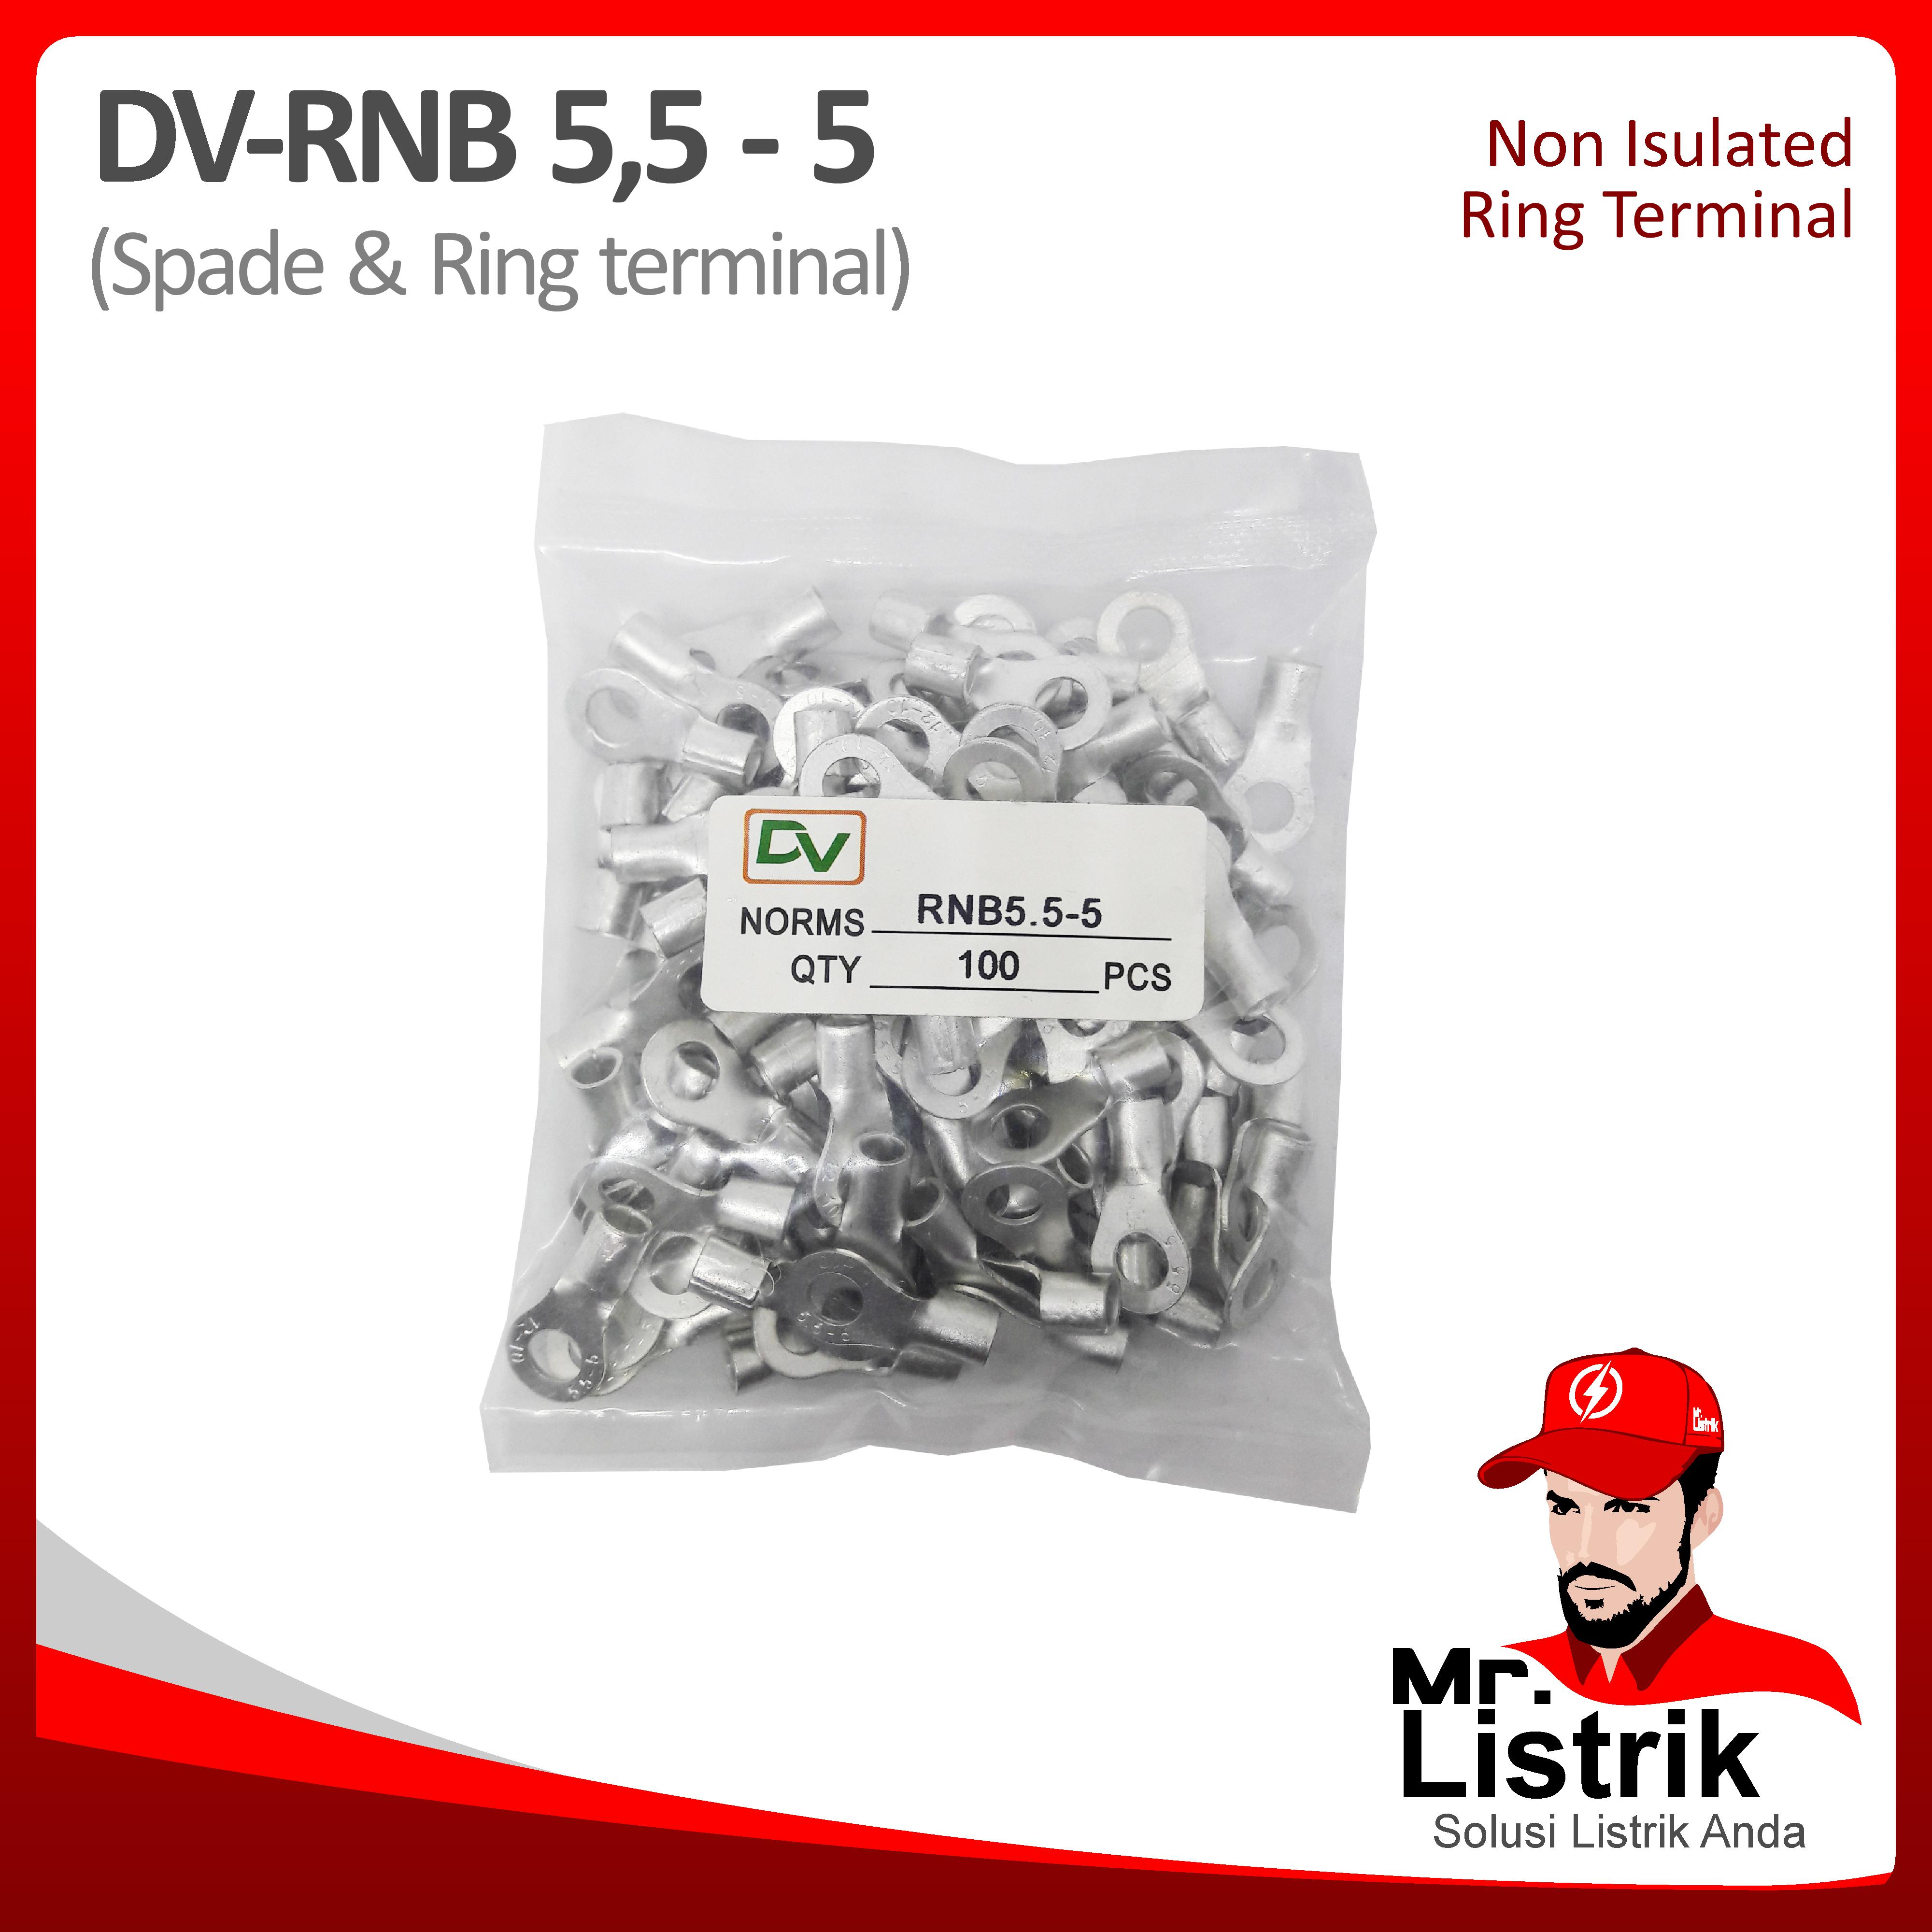 Non Insulated Skun Ring 4-6mm DV RNB5.5-5